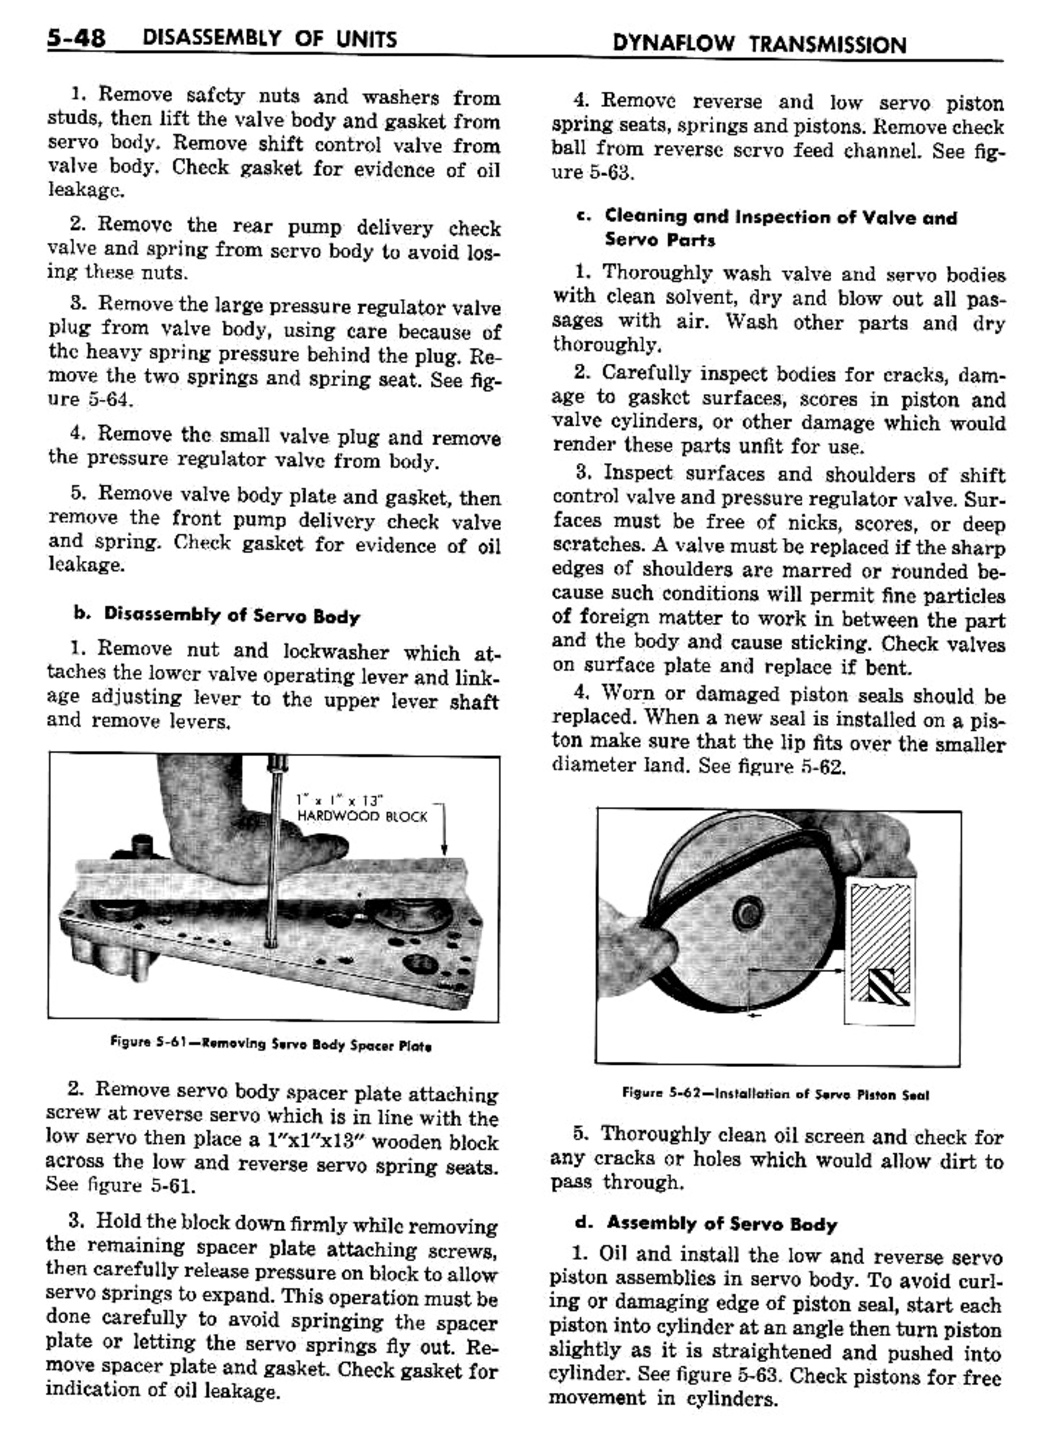 n_06 1957 Buick Shop Manual - Dynaflow-048-048.jpg